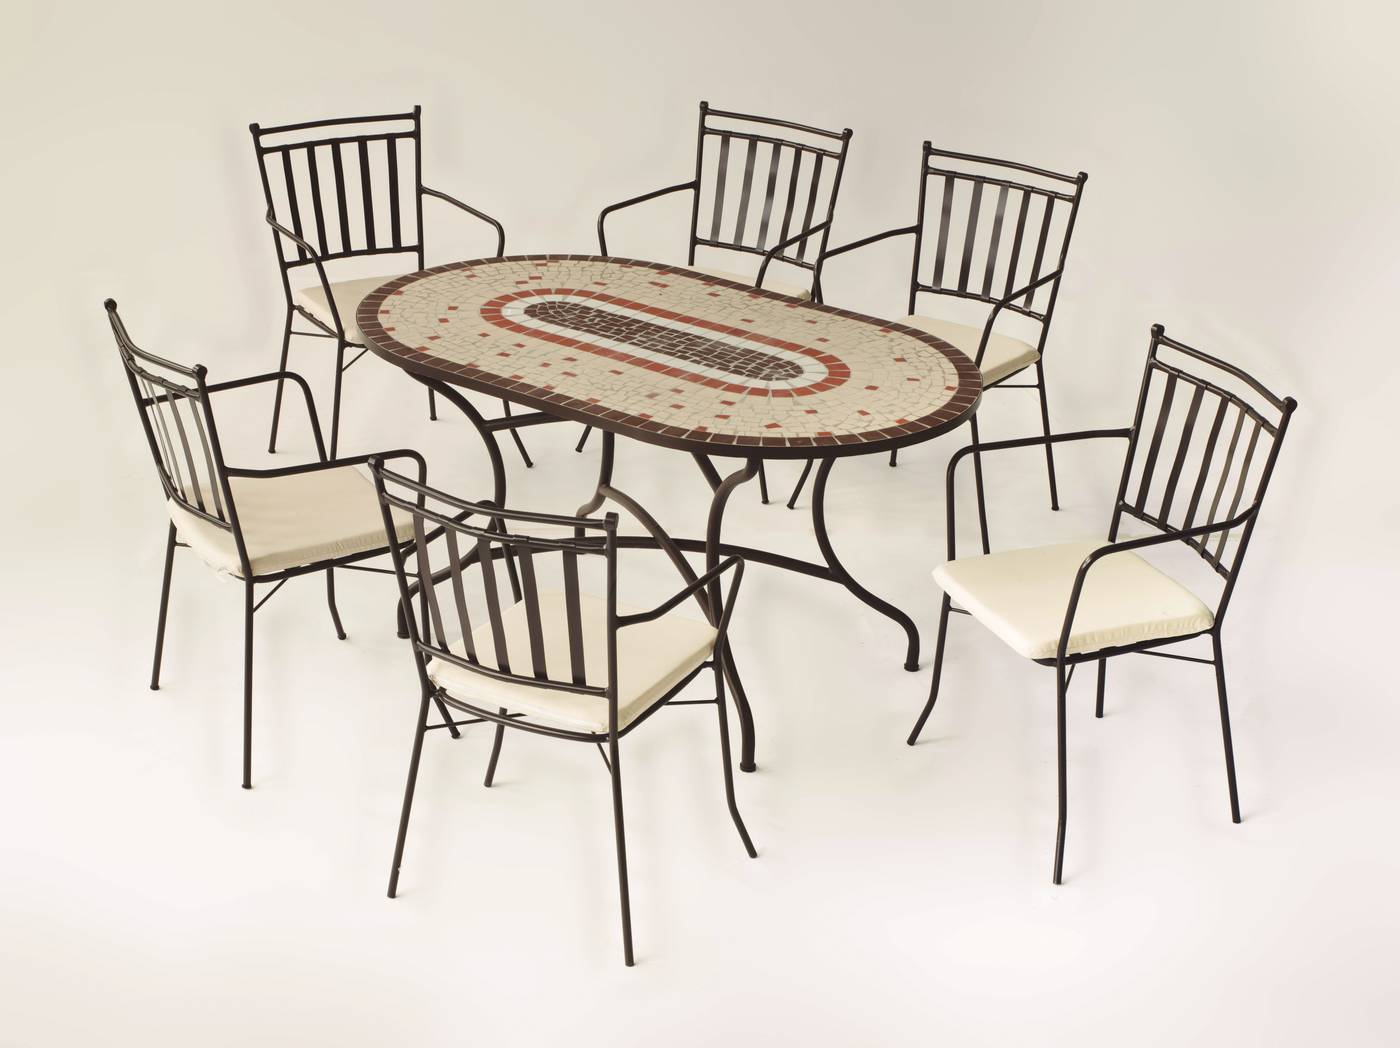 Conjunto de forja color bronce: mesa con tablero mosaico de 150 cm + 4 sillones con cojines asiento.<br/><br/><b>OFERTA VÁLIDA HASTA EL 31 DE MAYO O FIN DE EXISTENCIAS</b>.